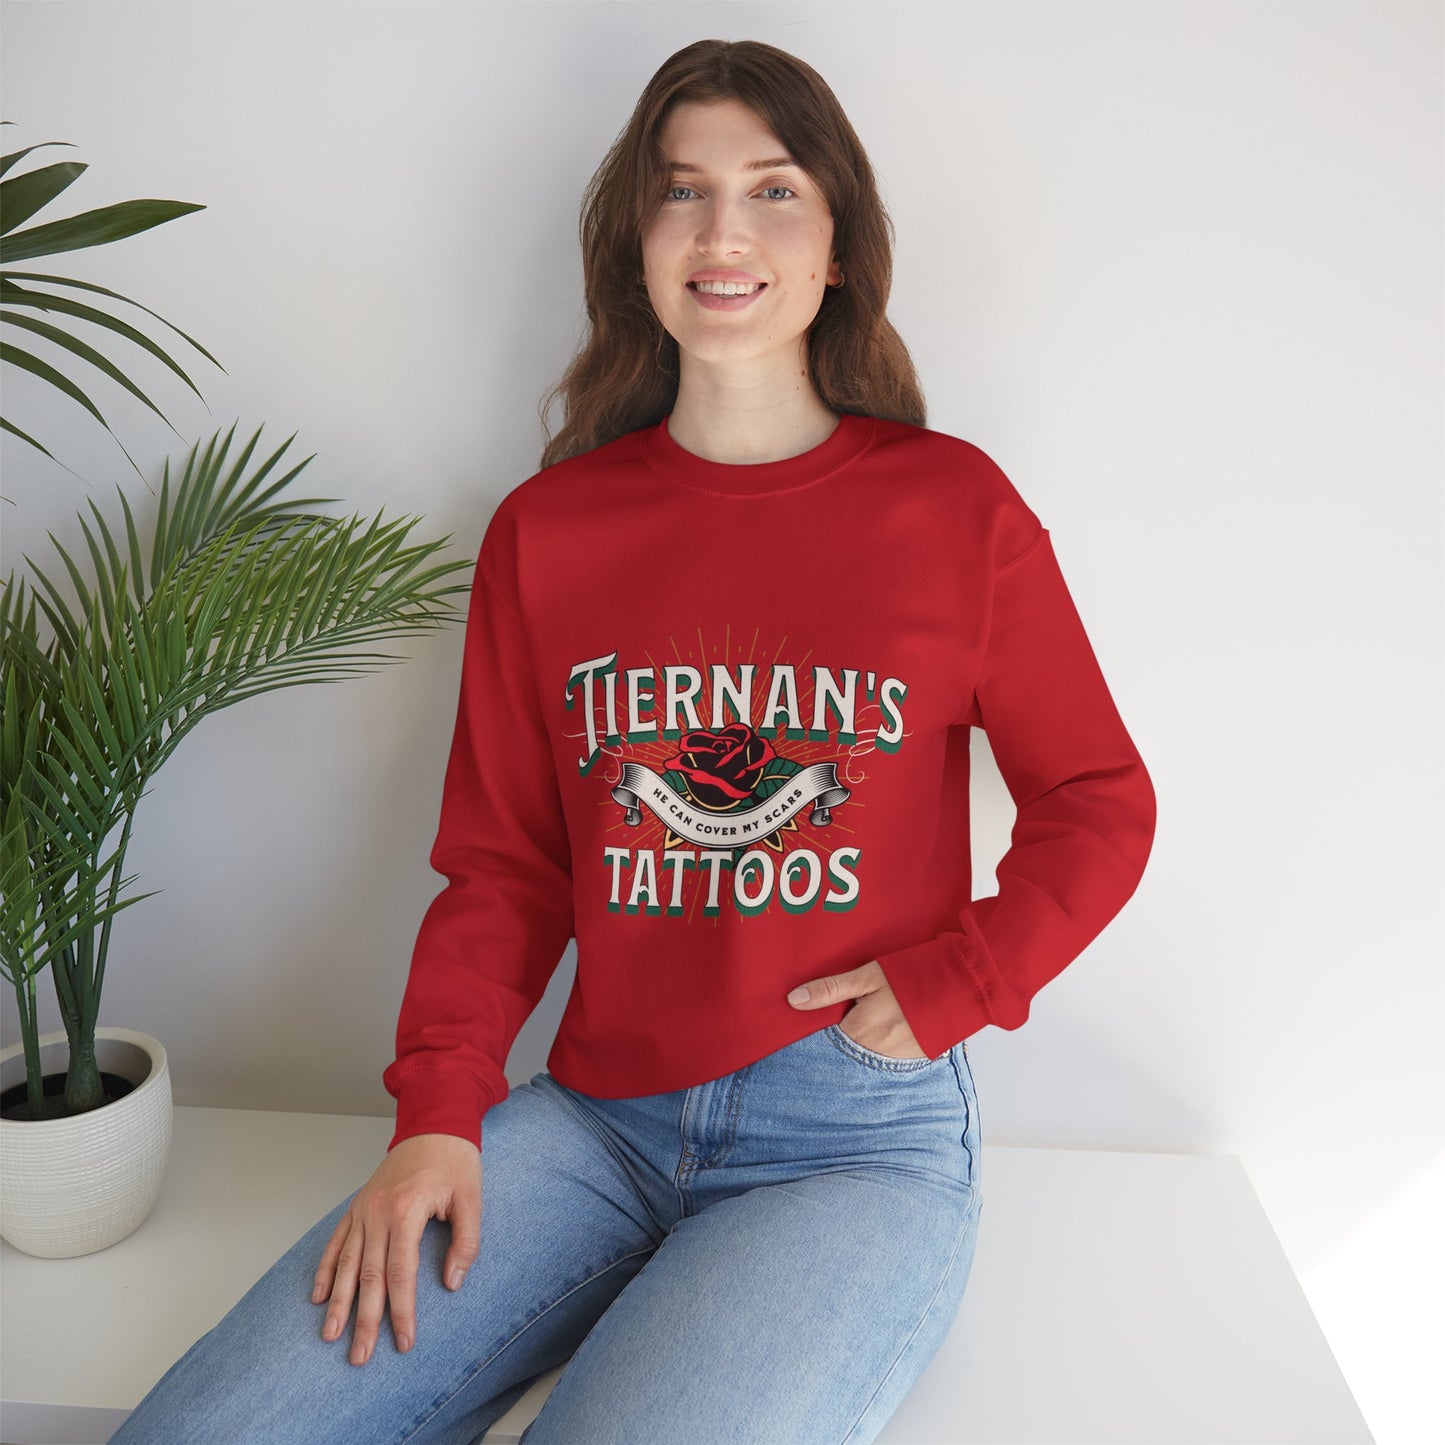 Tiernan's Tattoos